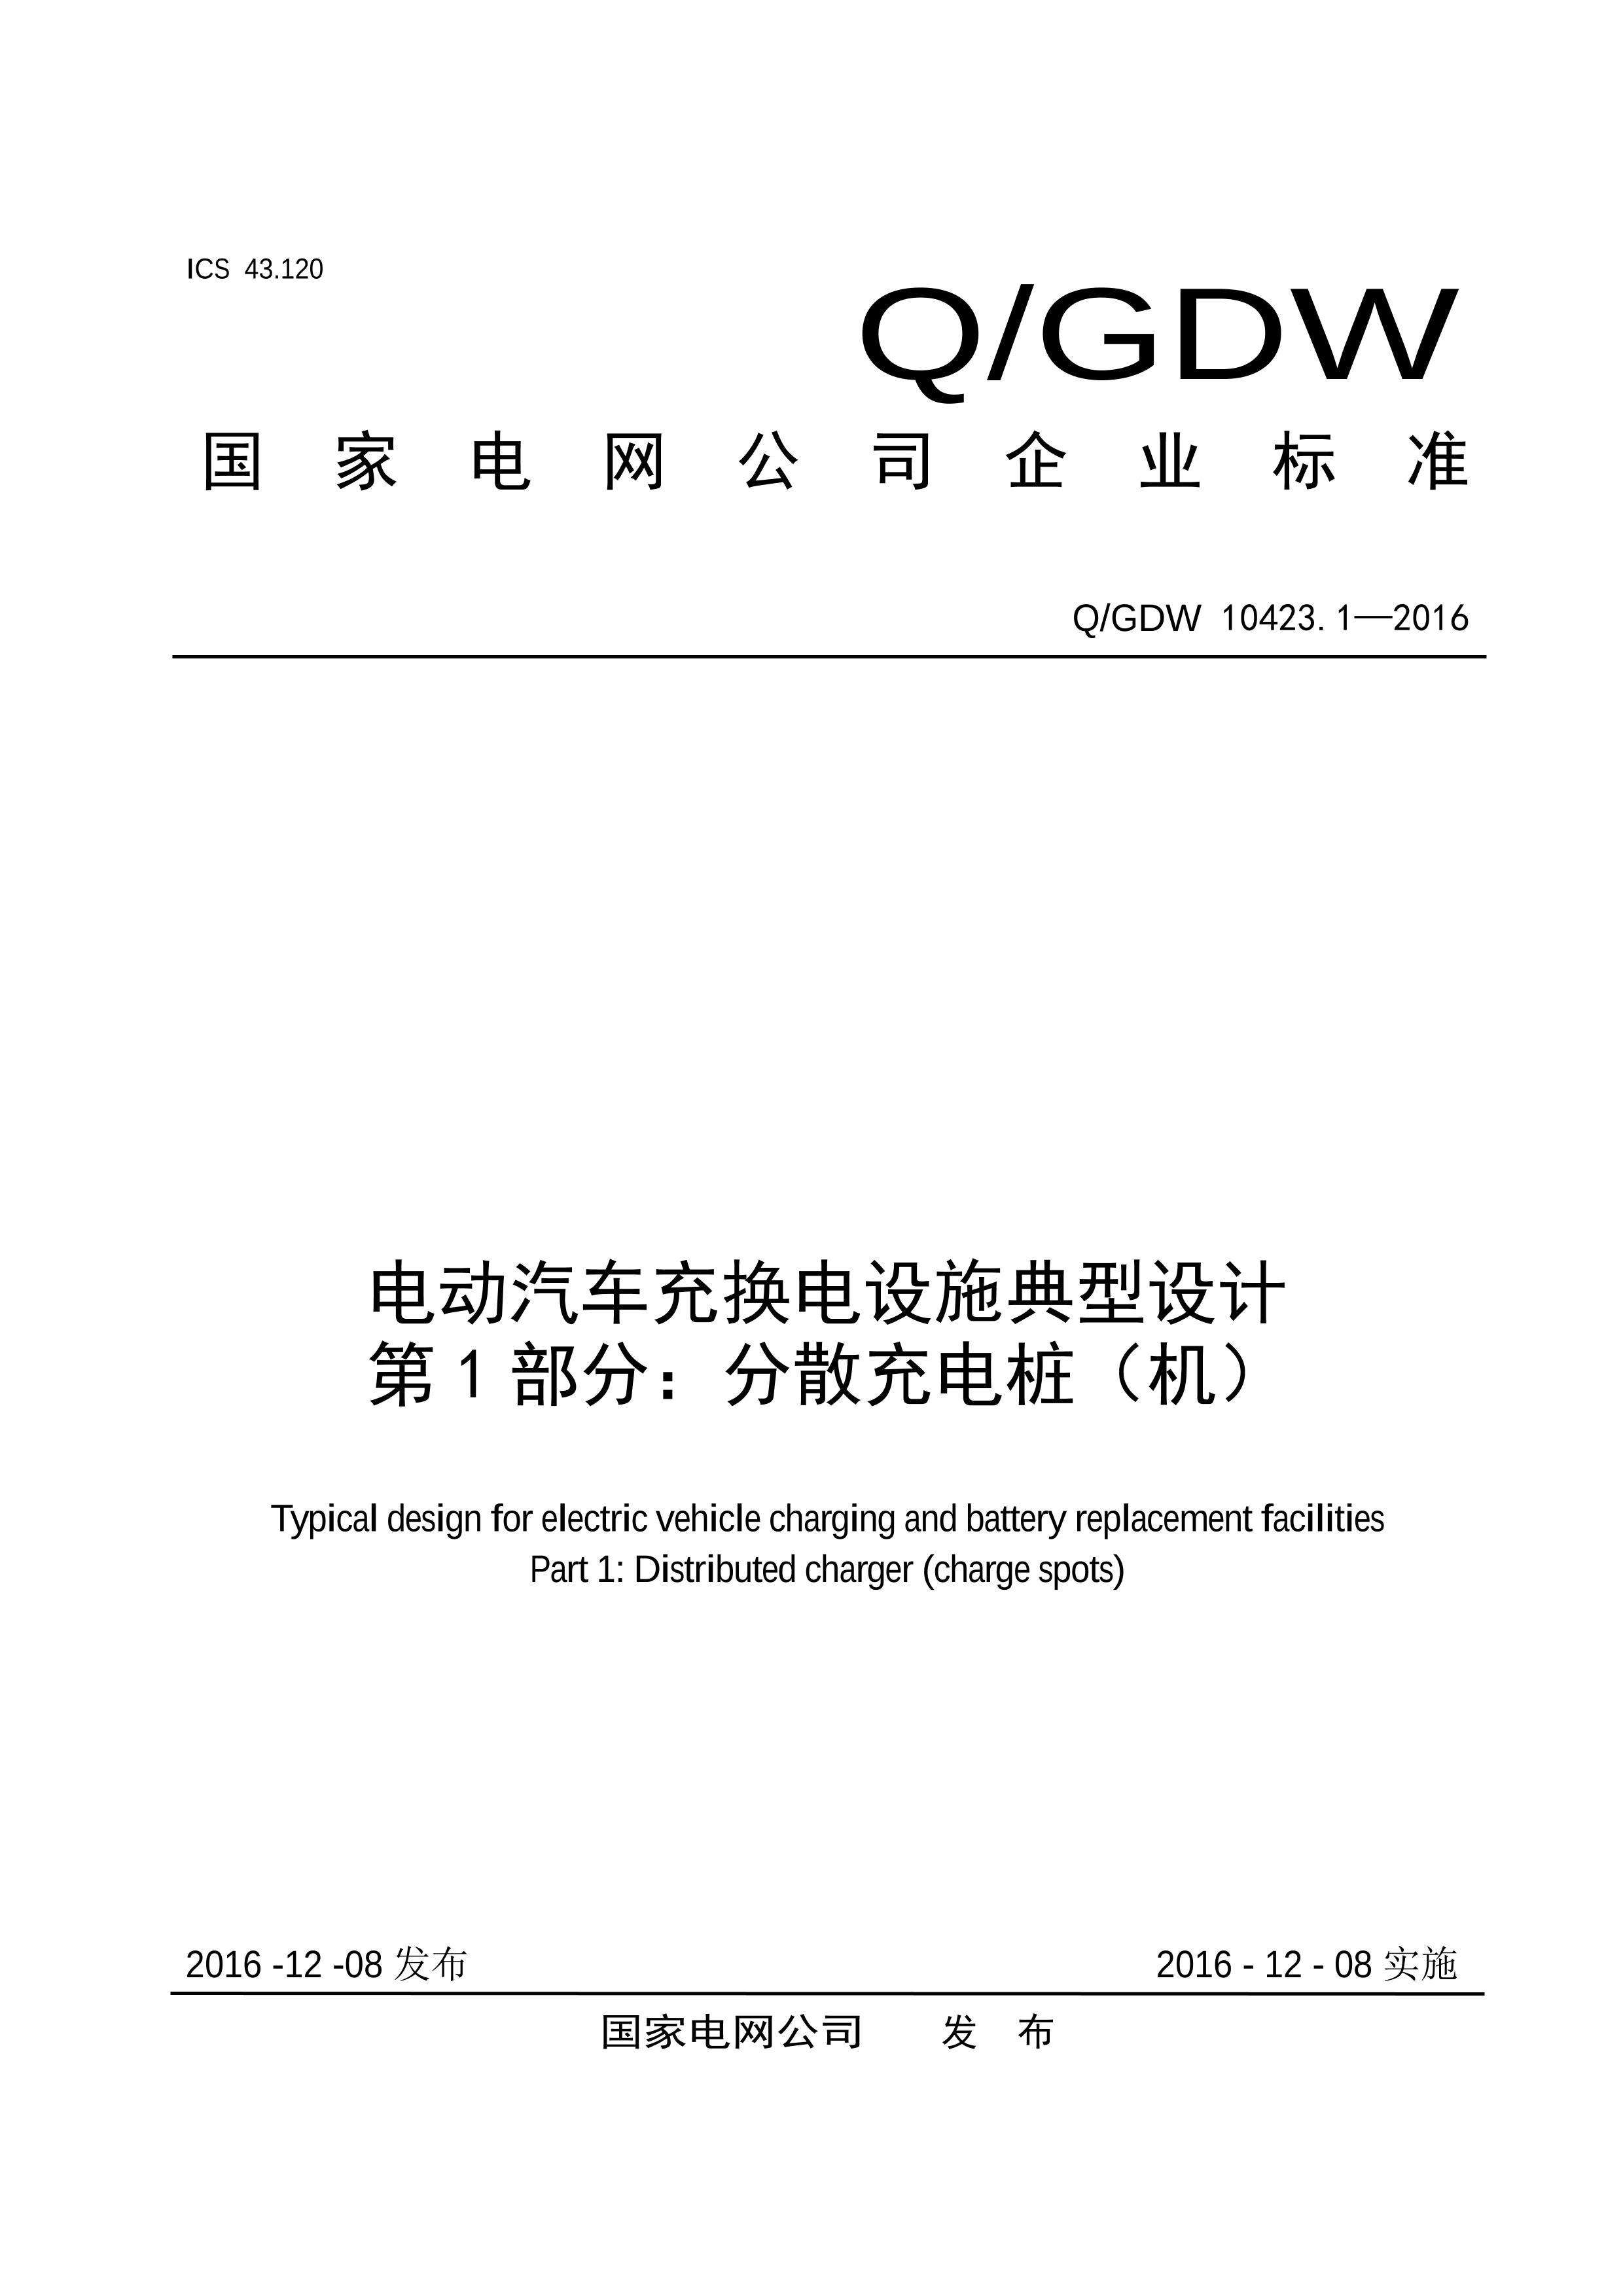 QGDW 10423.1-2016 綯任ʩ 1֣ɢ׮.PDF1ҳ